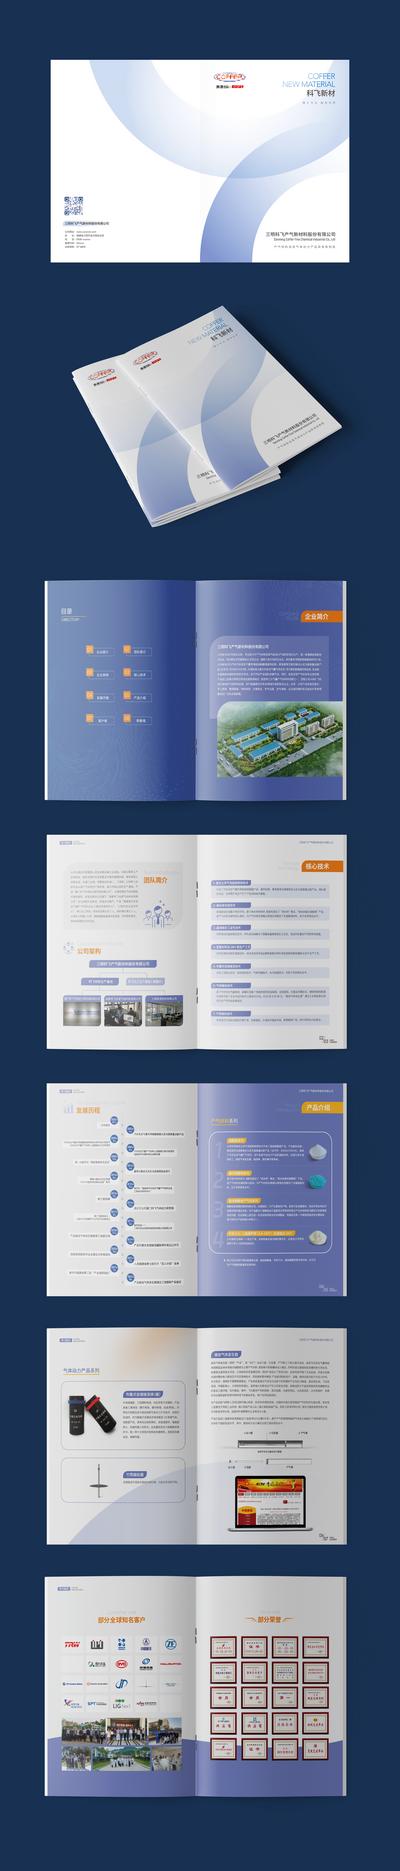 南门网 画册 产品手册 新能源 科技 简约 时尚 折页 产品手册 版式设计 图片排版 企业文化 企业荣誉